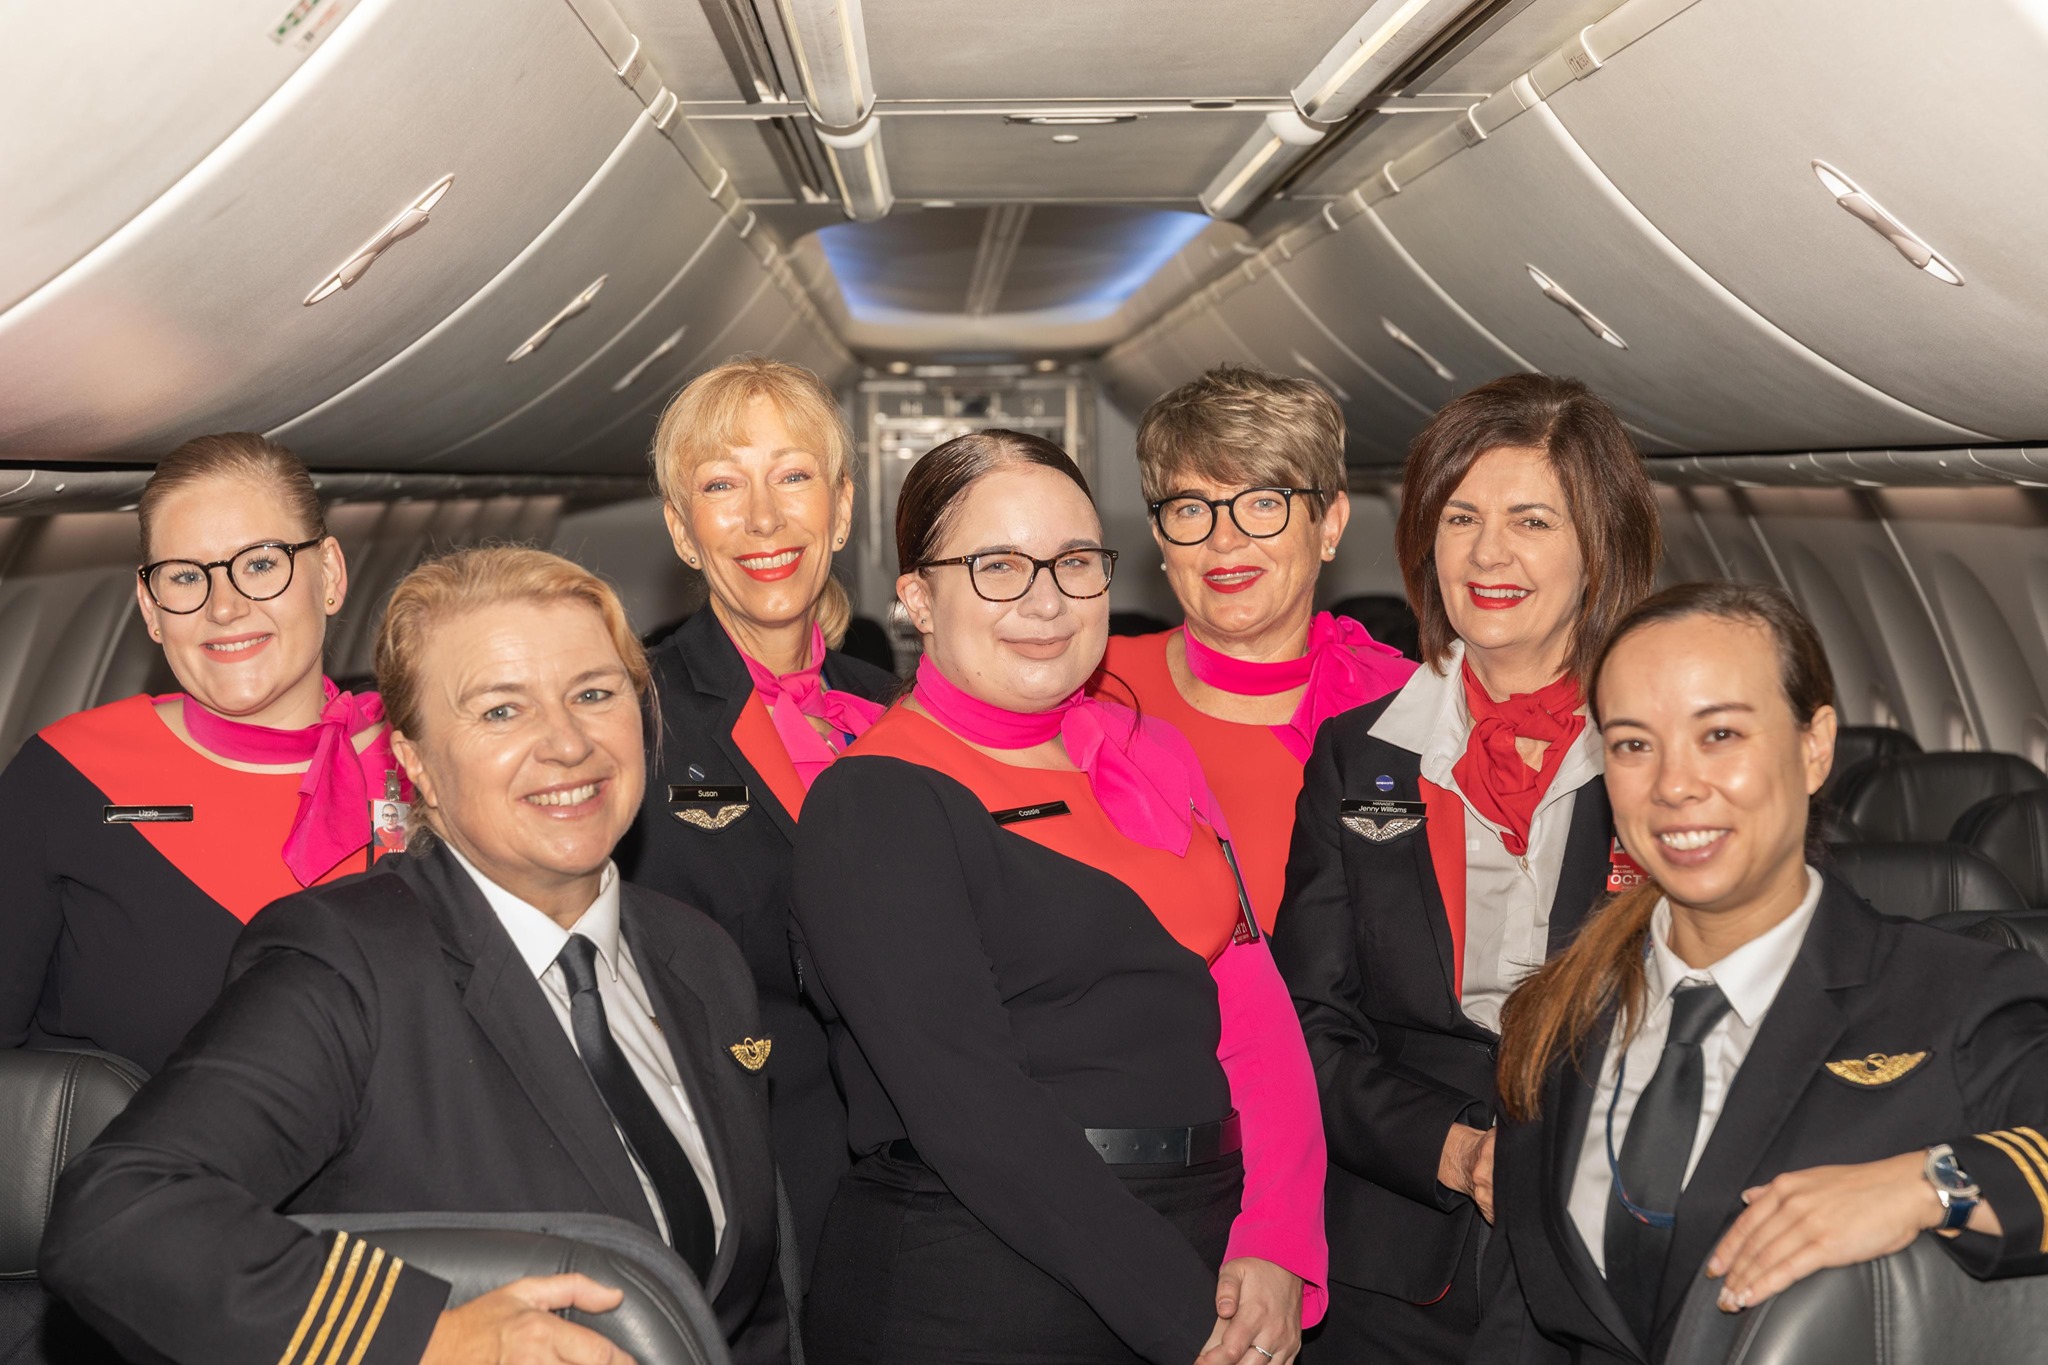 Flight Attendants Qantas From Their Facebook